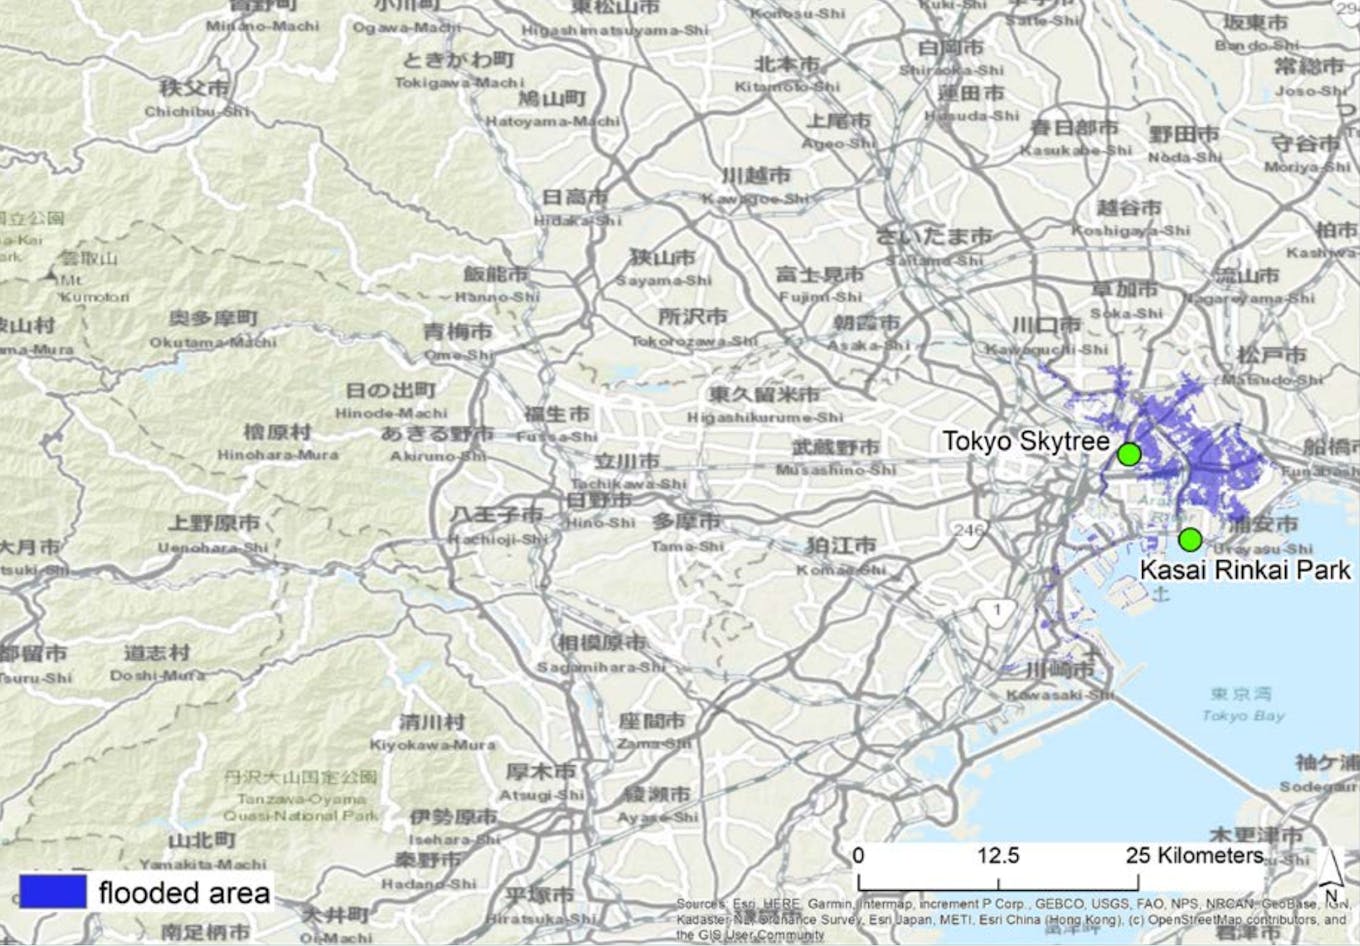 Flood risk parts of Tokyo